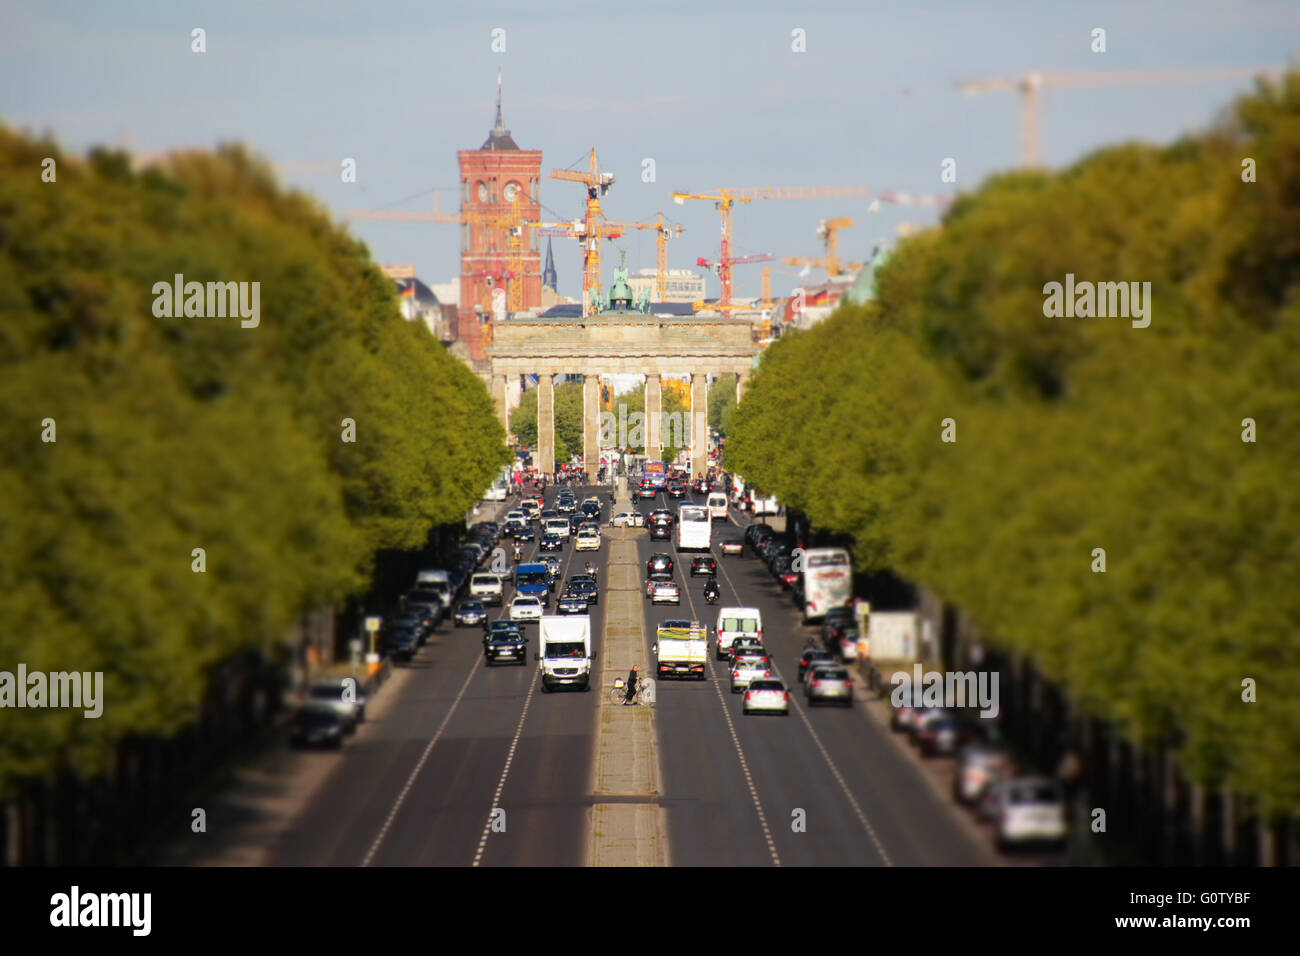 La ville de Berlin - porte de Brandebourg et l'hôtel de ville rouge - tilt  shift Photo Stock - Alamy